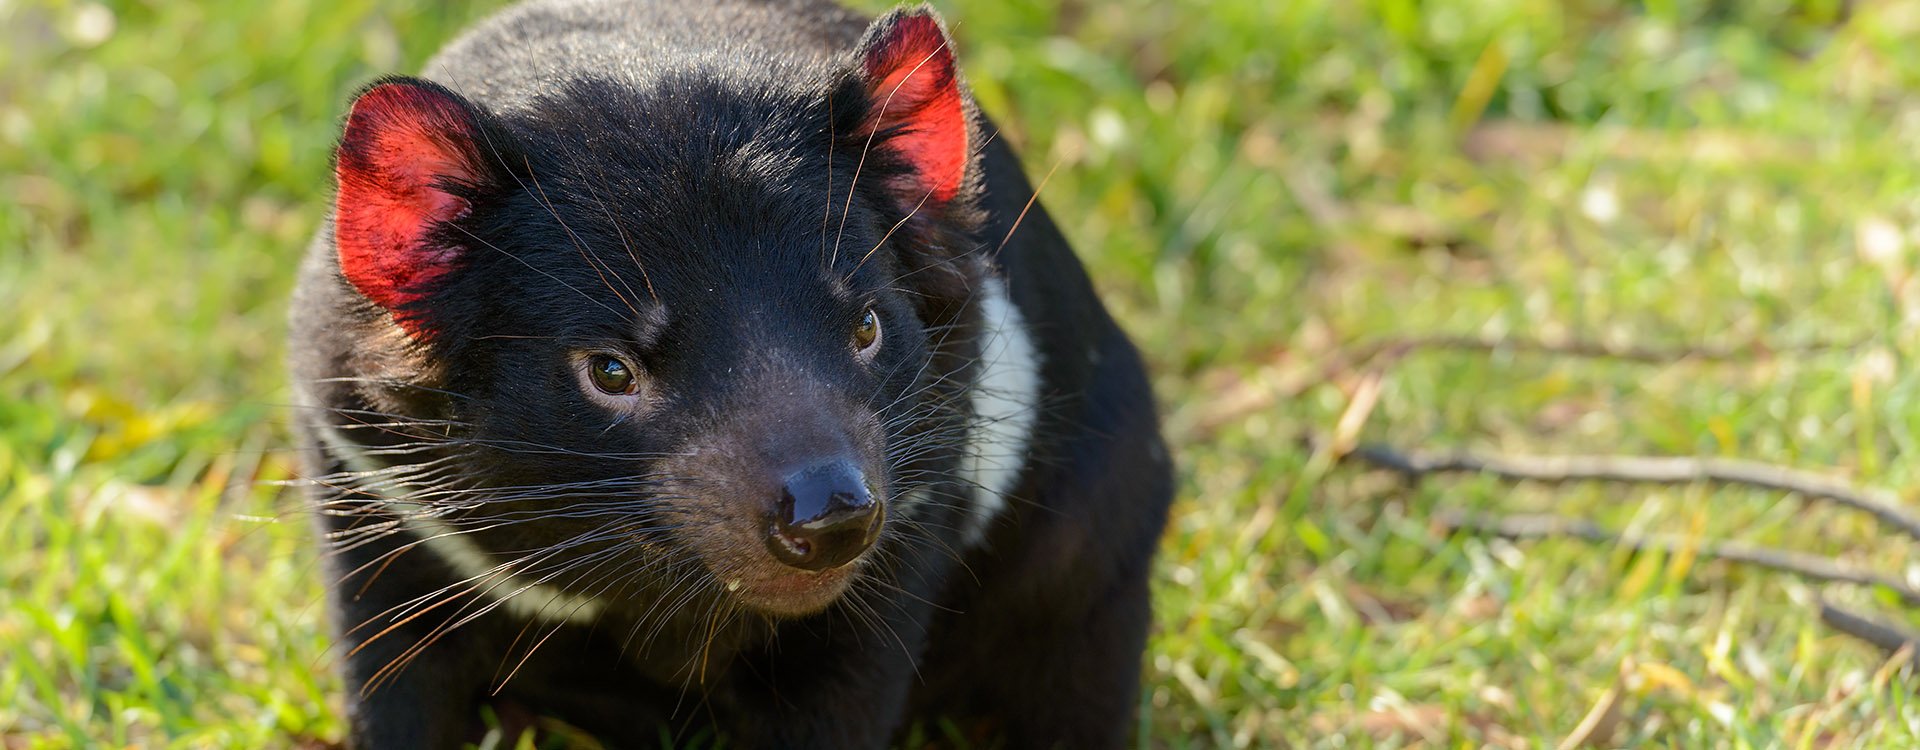 Tasmanian devil (Sarcophilus harrisii), Tasmania, Australia